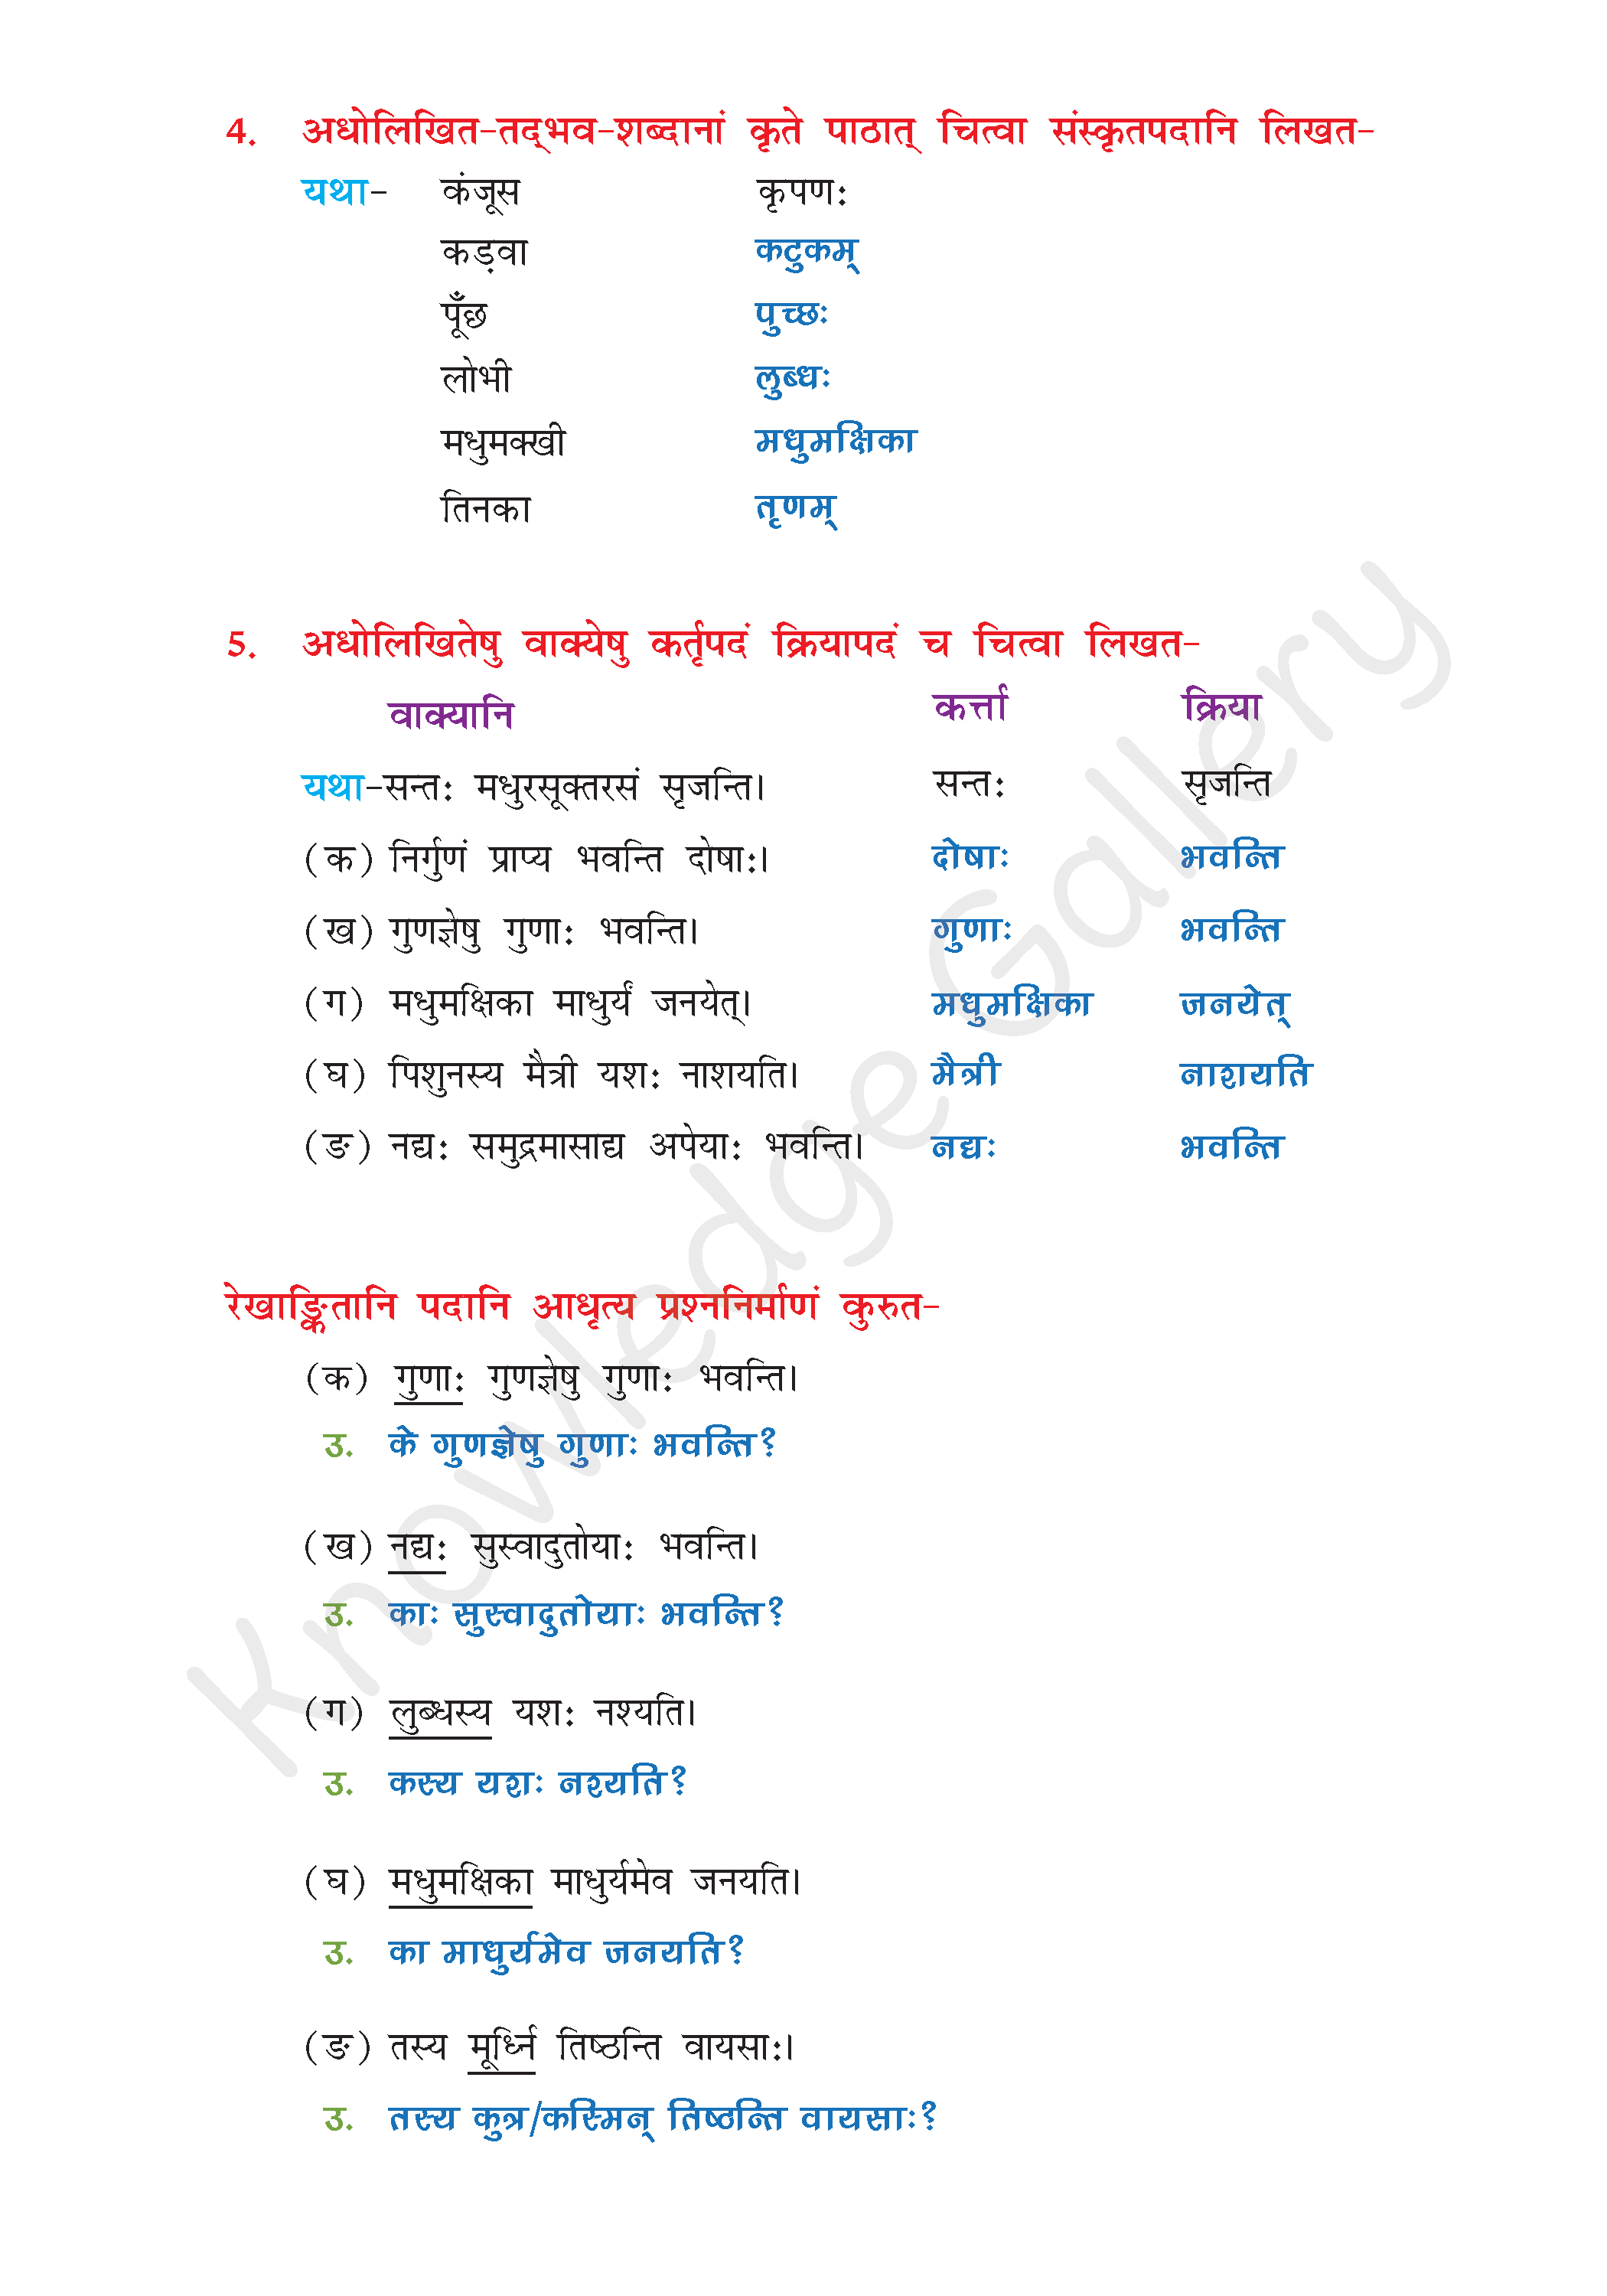 NCERT Solution For Class 8 Sanskrit Chapter 1 part 5